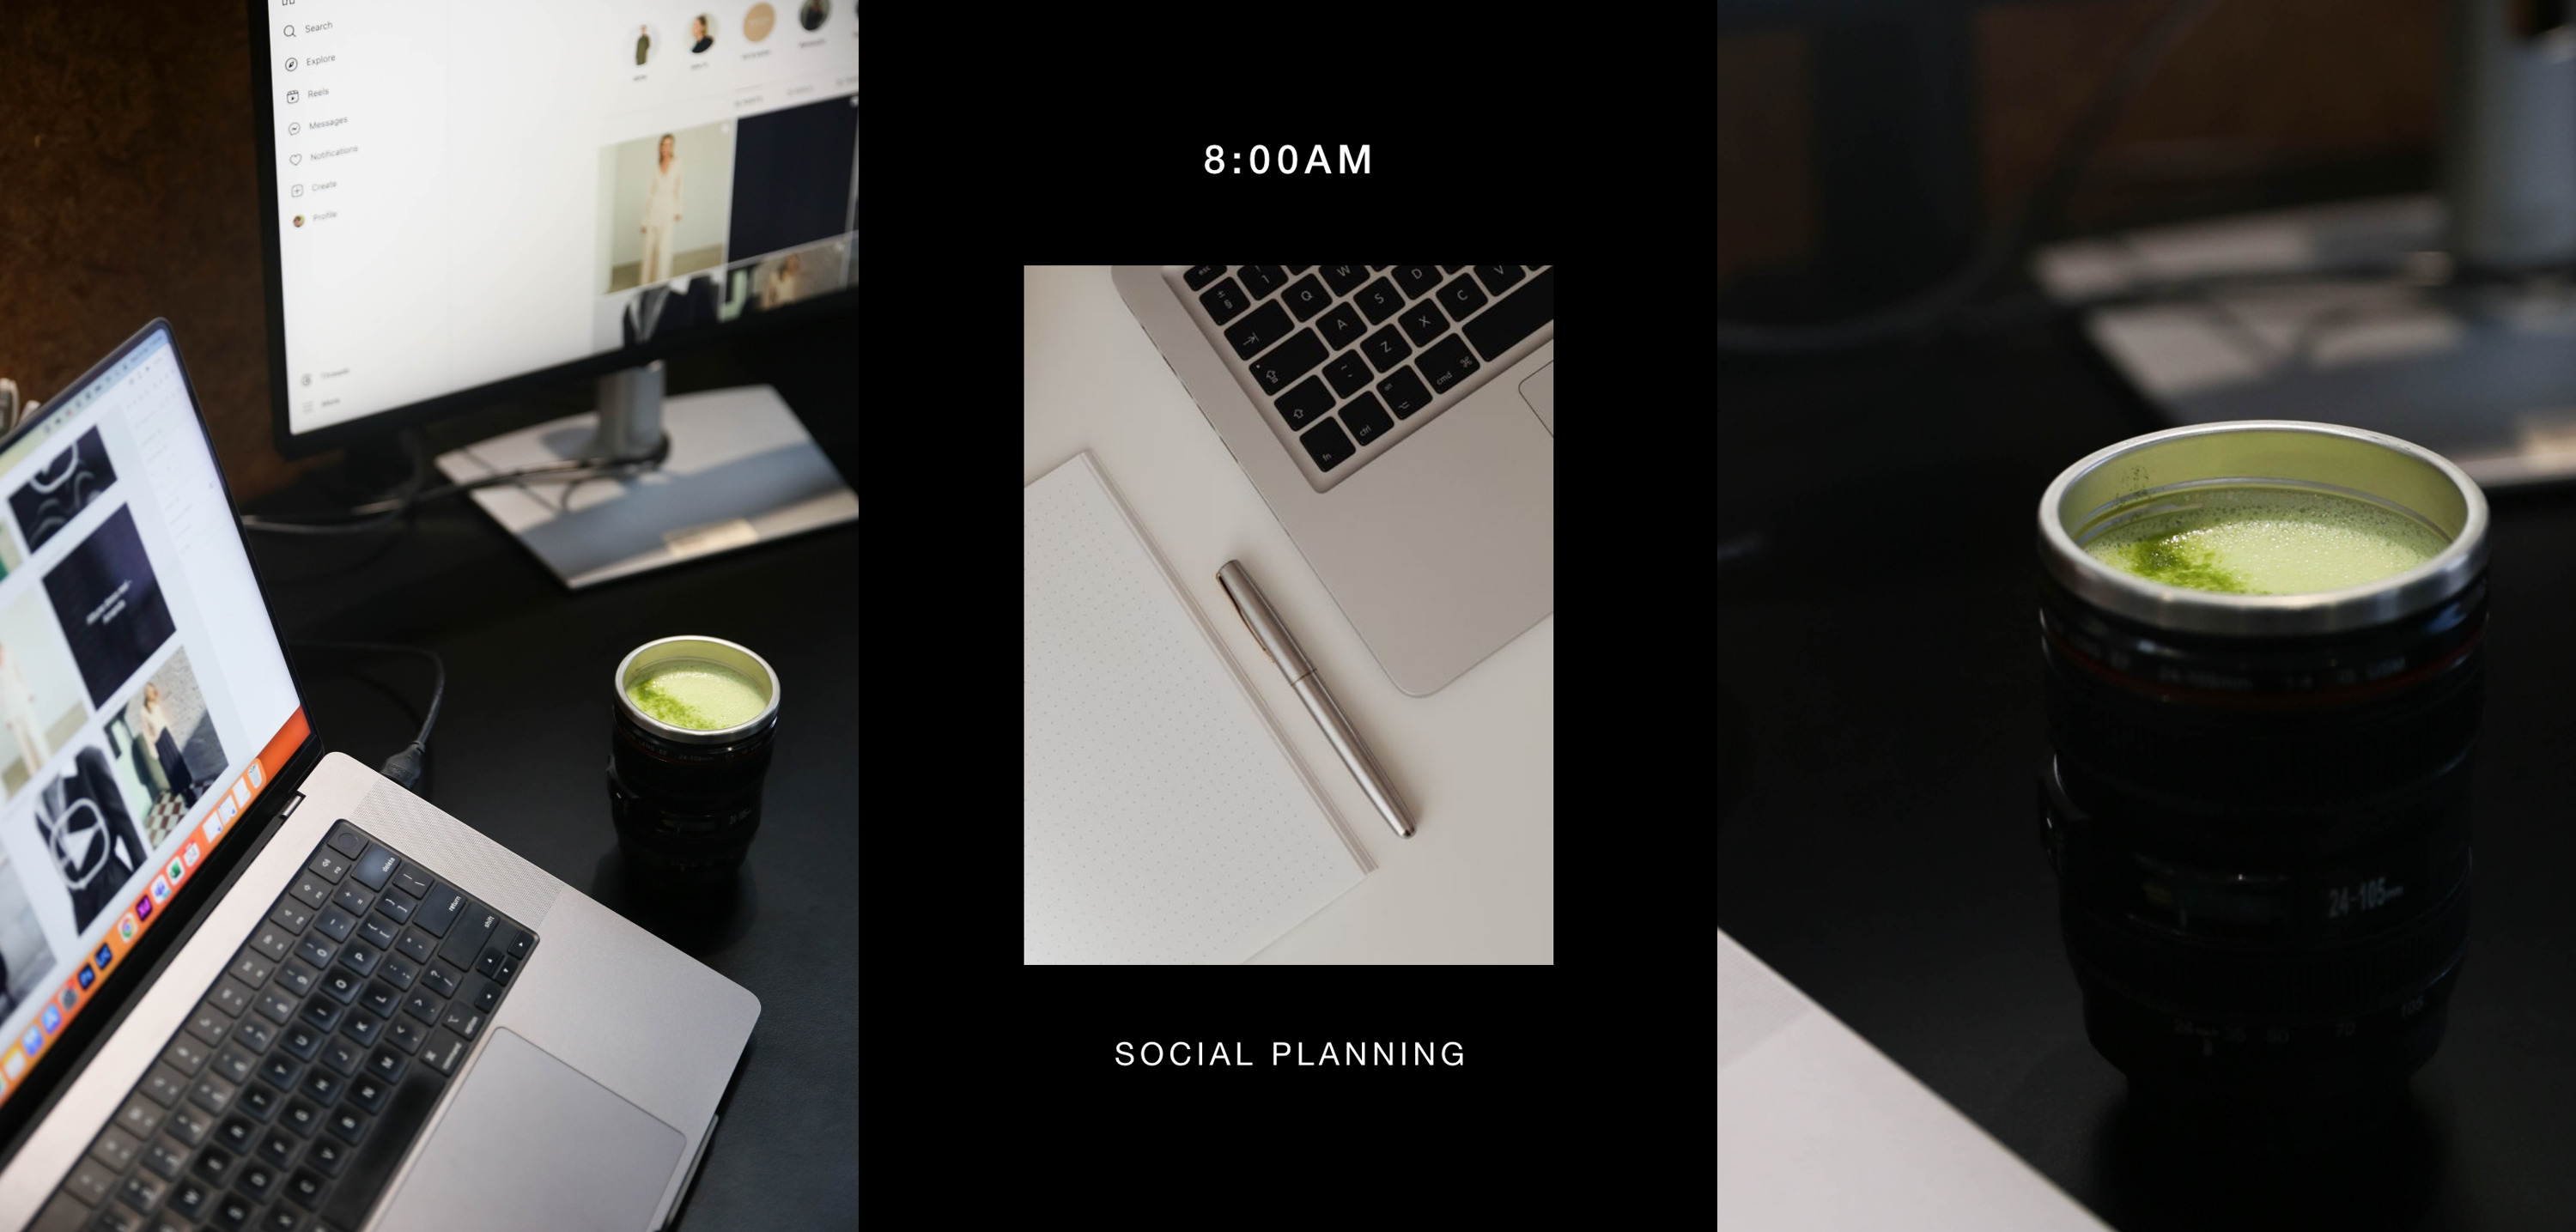 8am - social planning